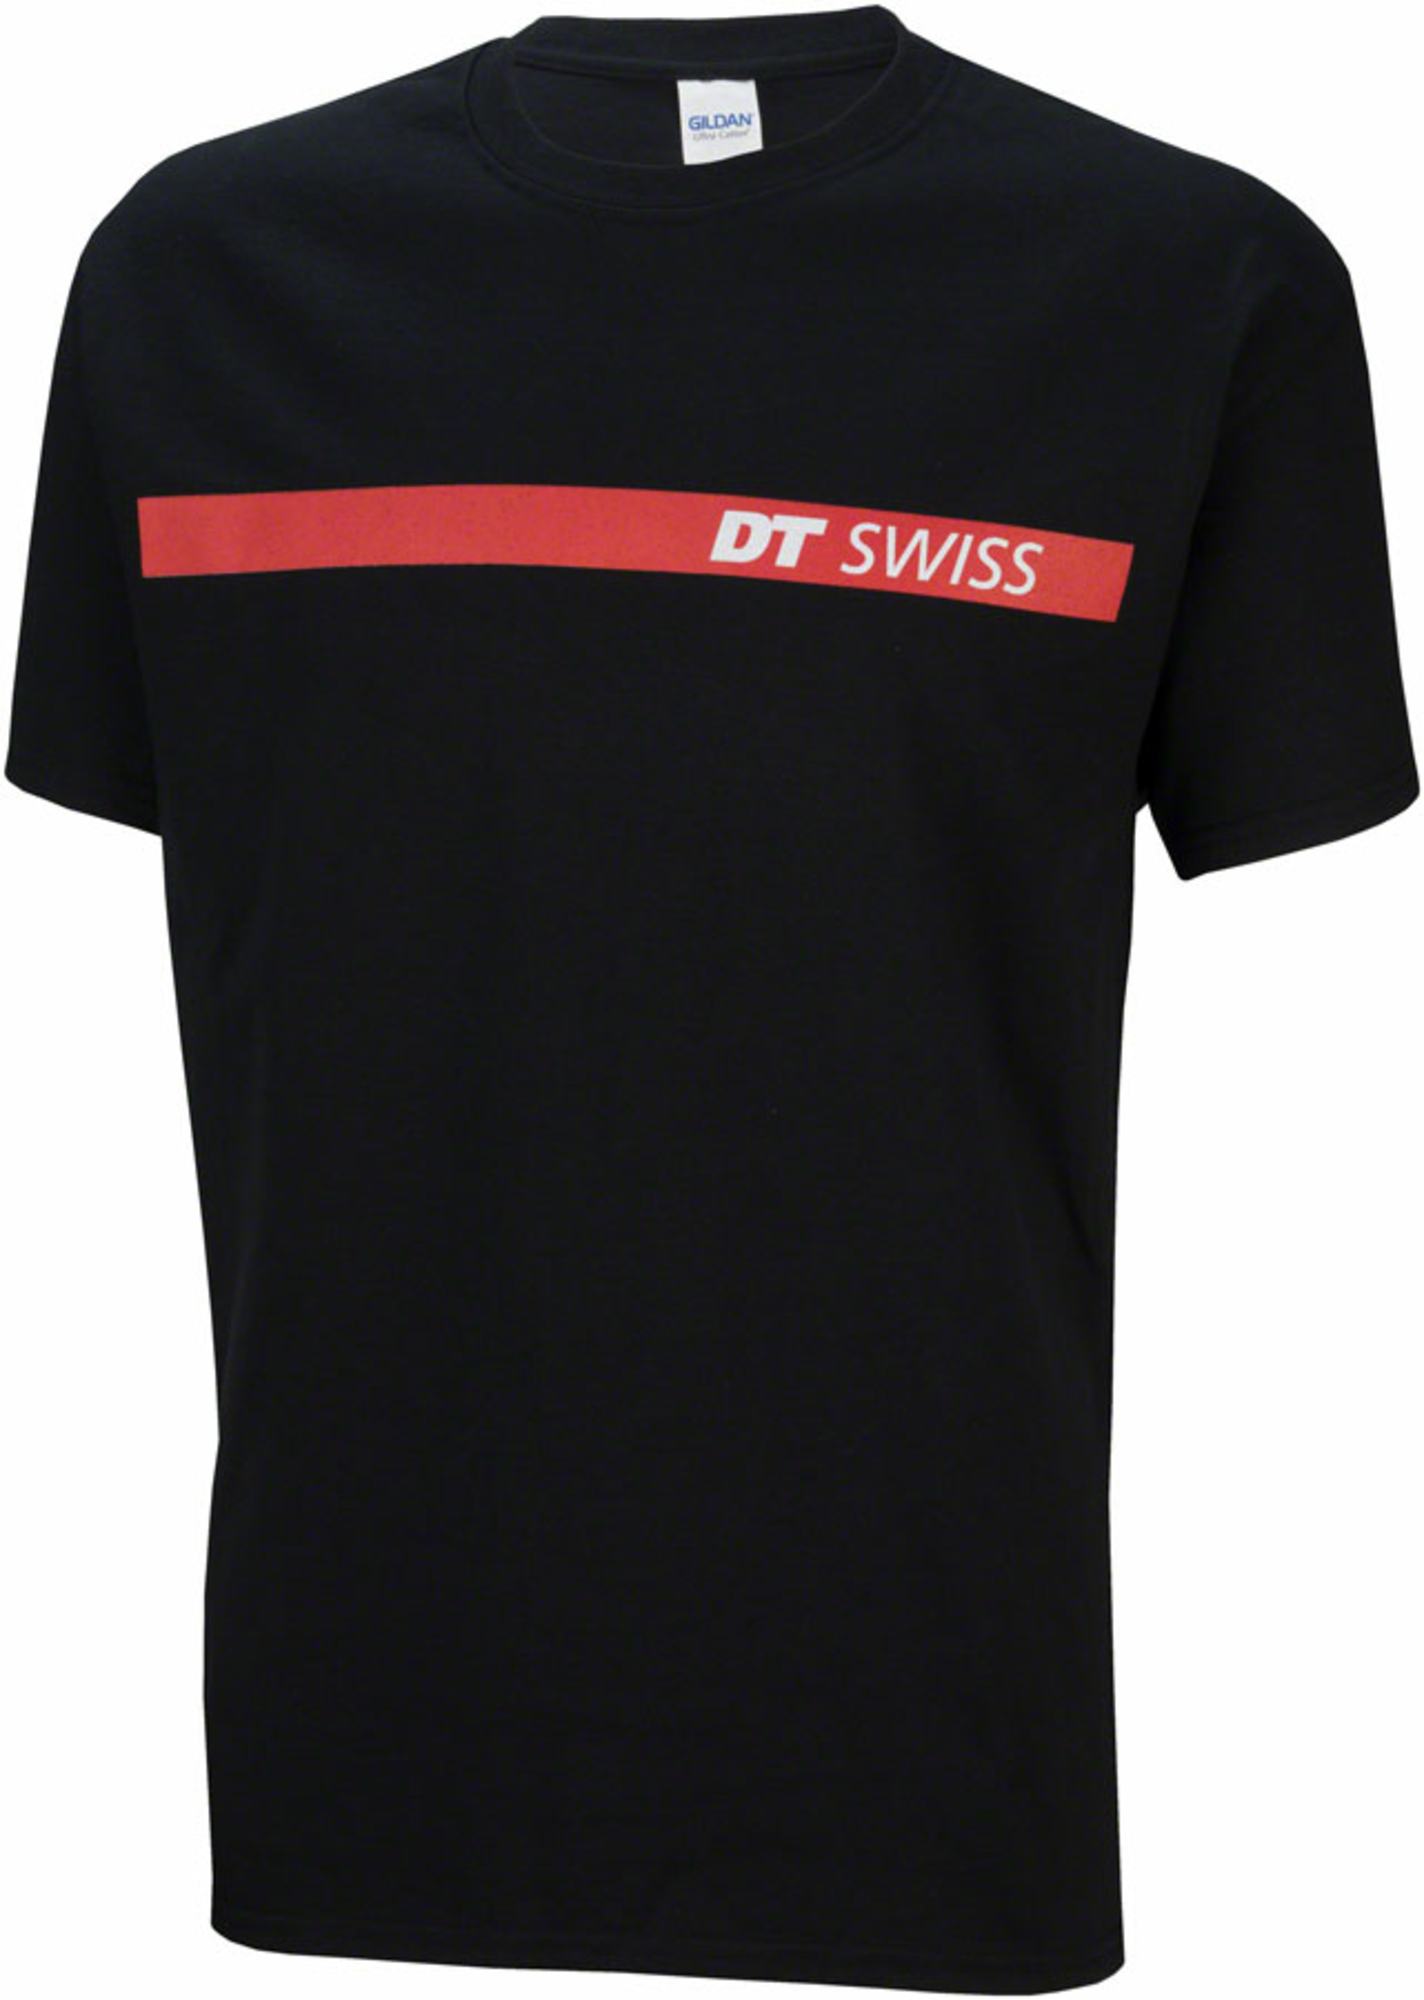 feit Heel tornado DT Swiss Logo T-Shirt - www.sagharborcycle.com